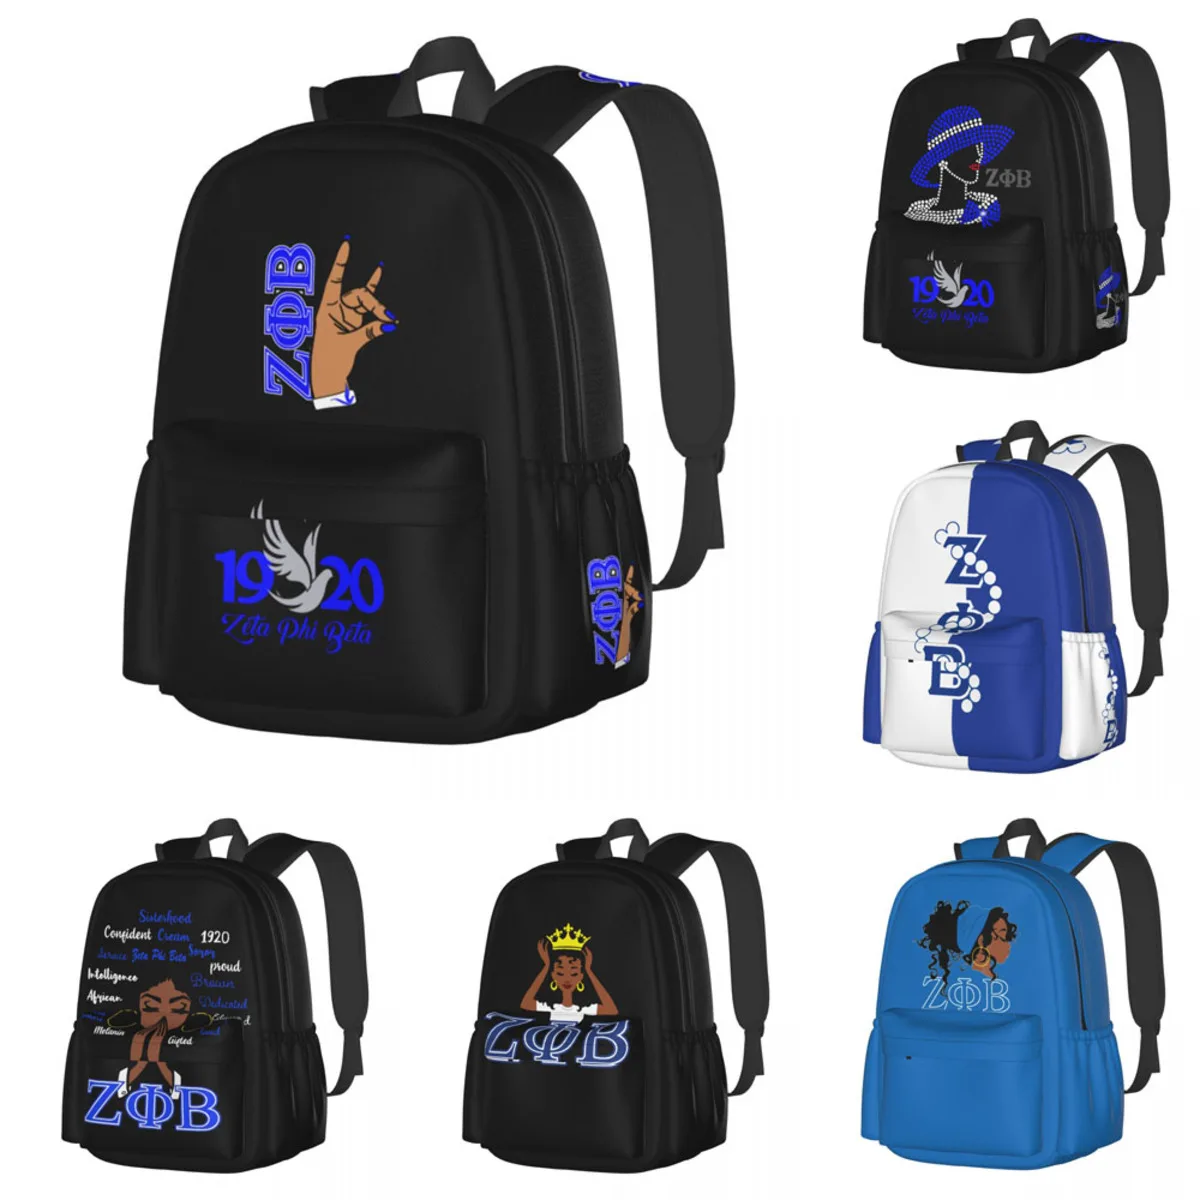 

Легкий студенческий рюкзак Zeta Phi Beta большой емкости для студентов в классе, для работы, отдыха, путешествий и многого другого